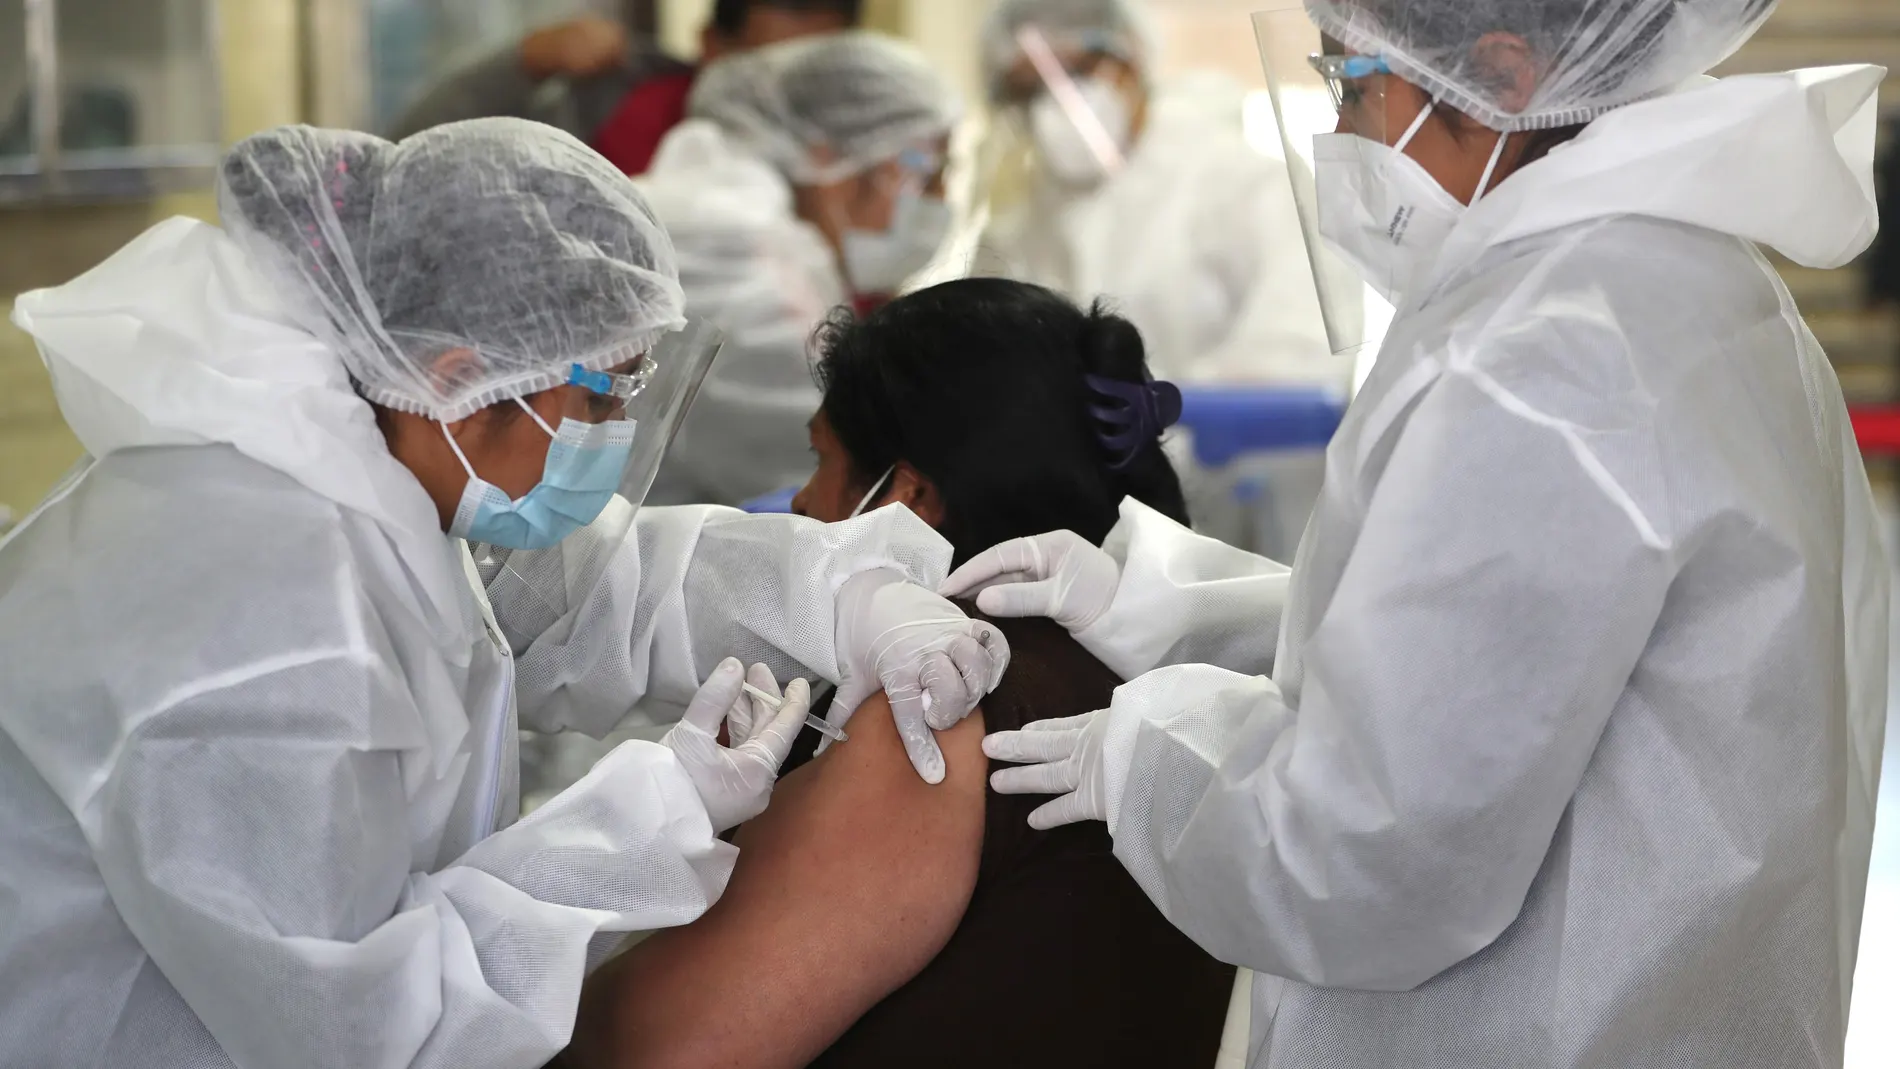 Los expertos prevén una vacunación conjunta covid-gripe a finales de 2021